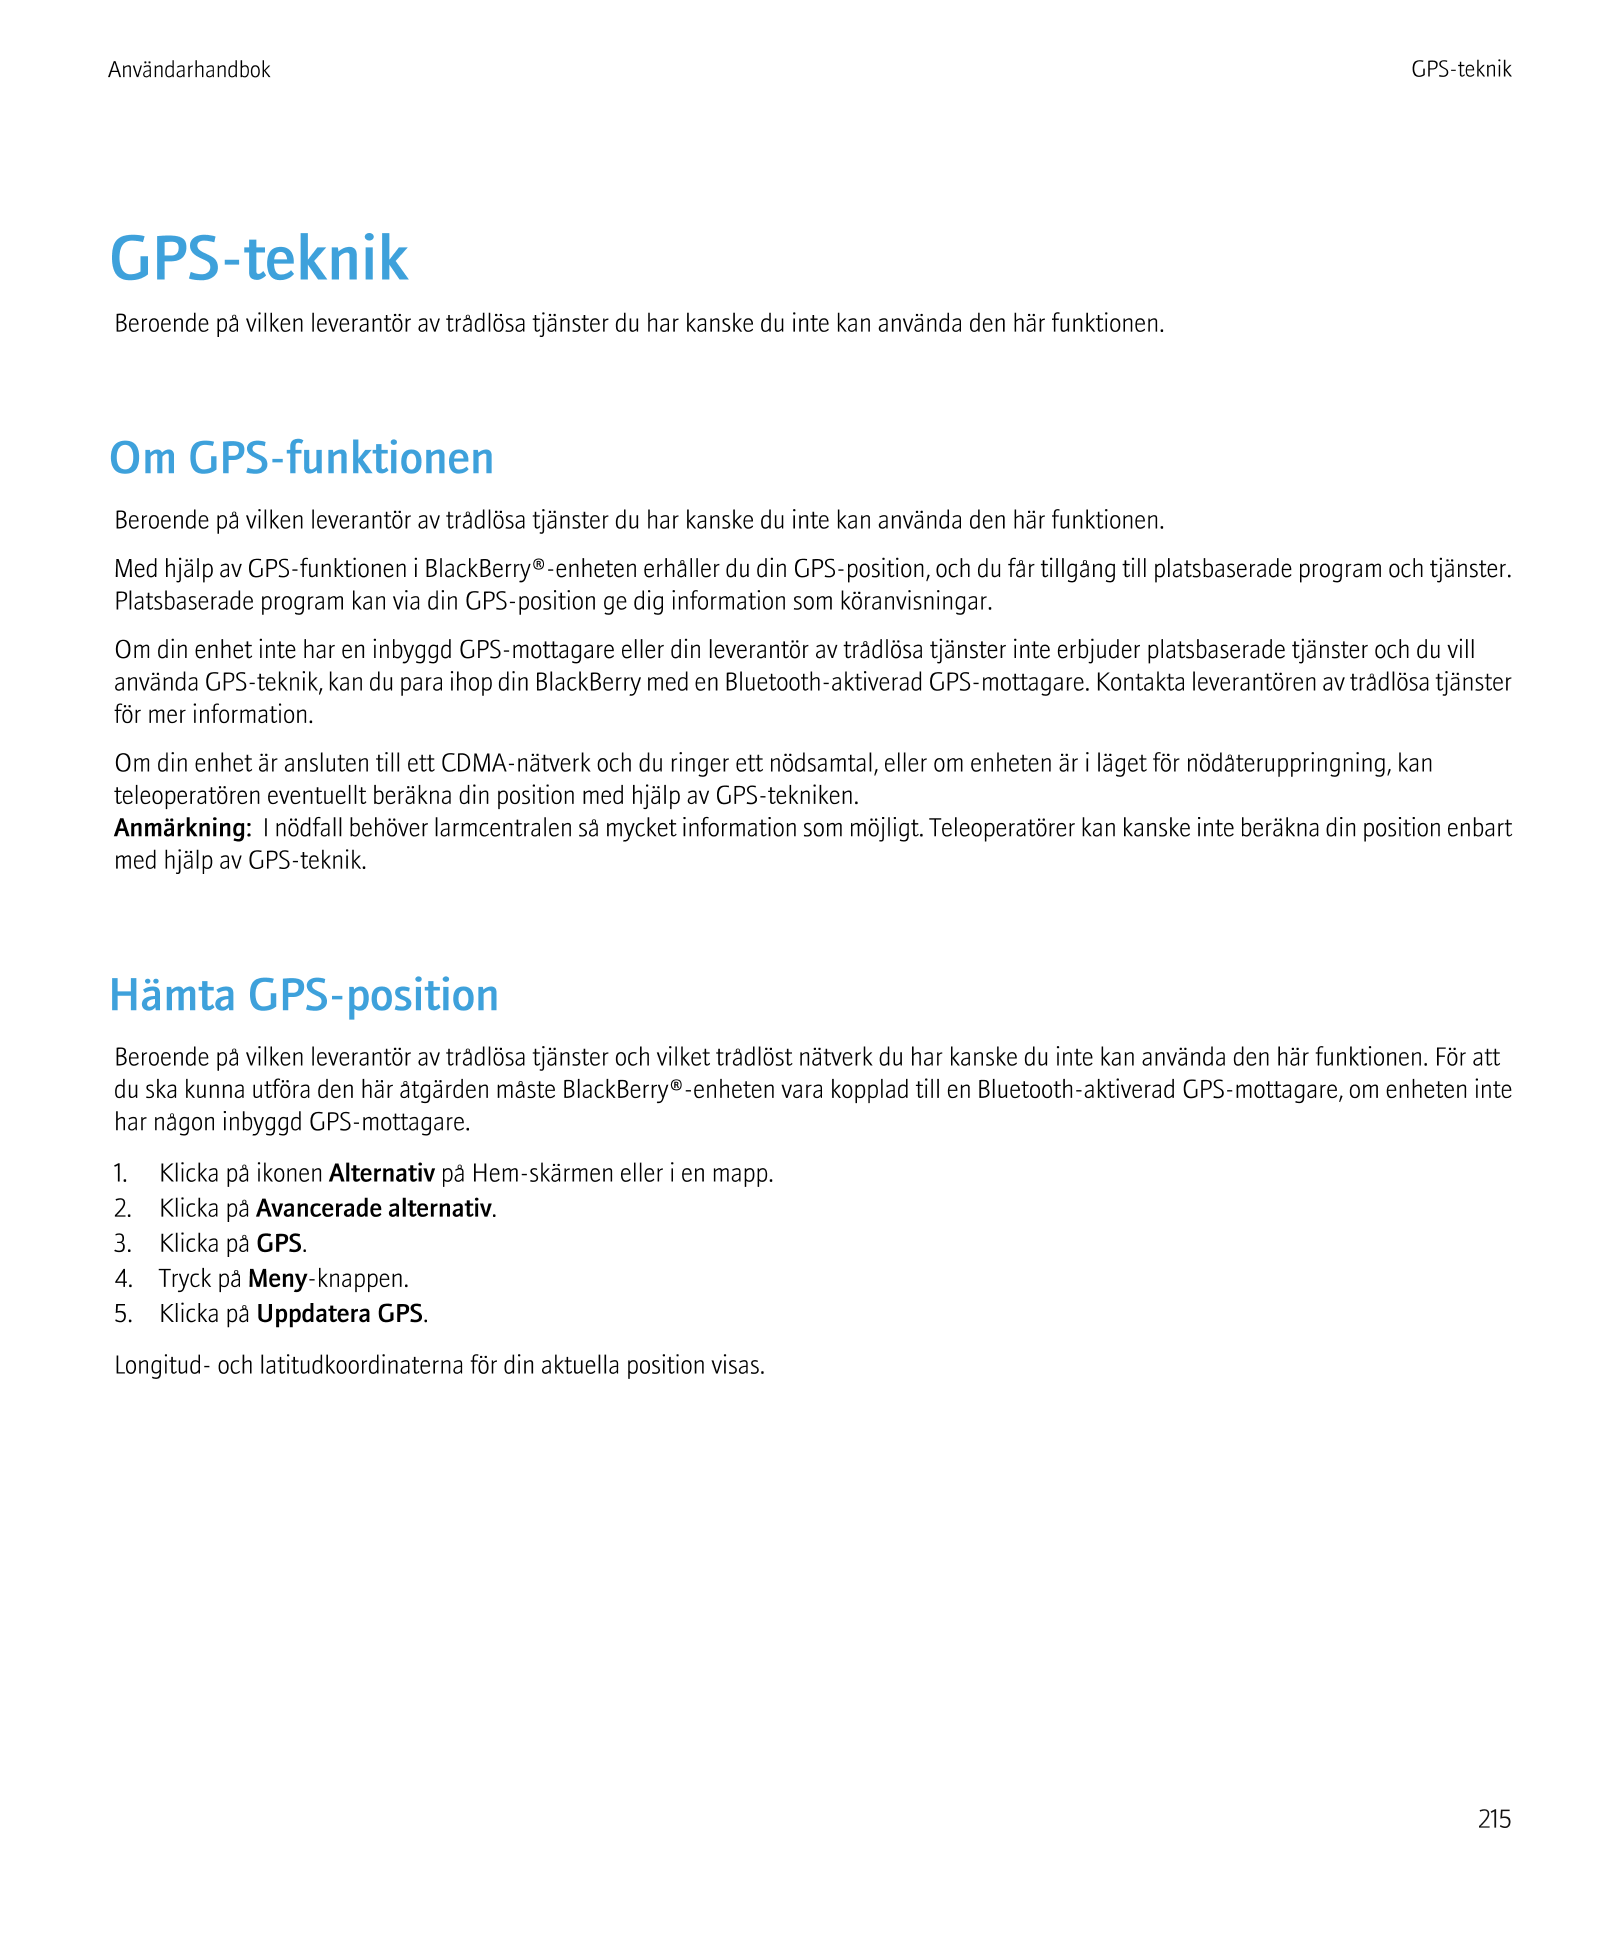 Användarhandbok GPS-teknik
GPS-teknik
Beroende på vilken leverantör av trådlösa tjänster du har kanske du inte kan använda den h